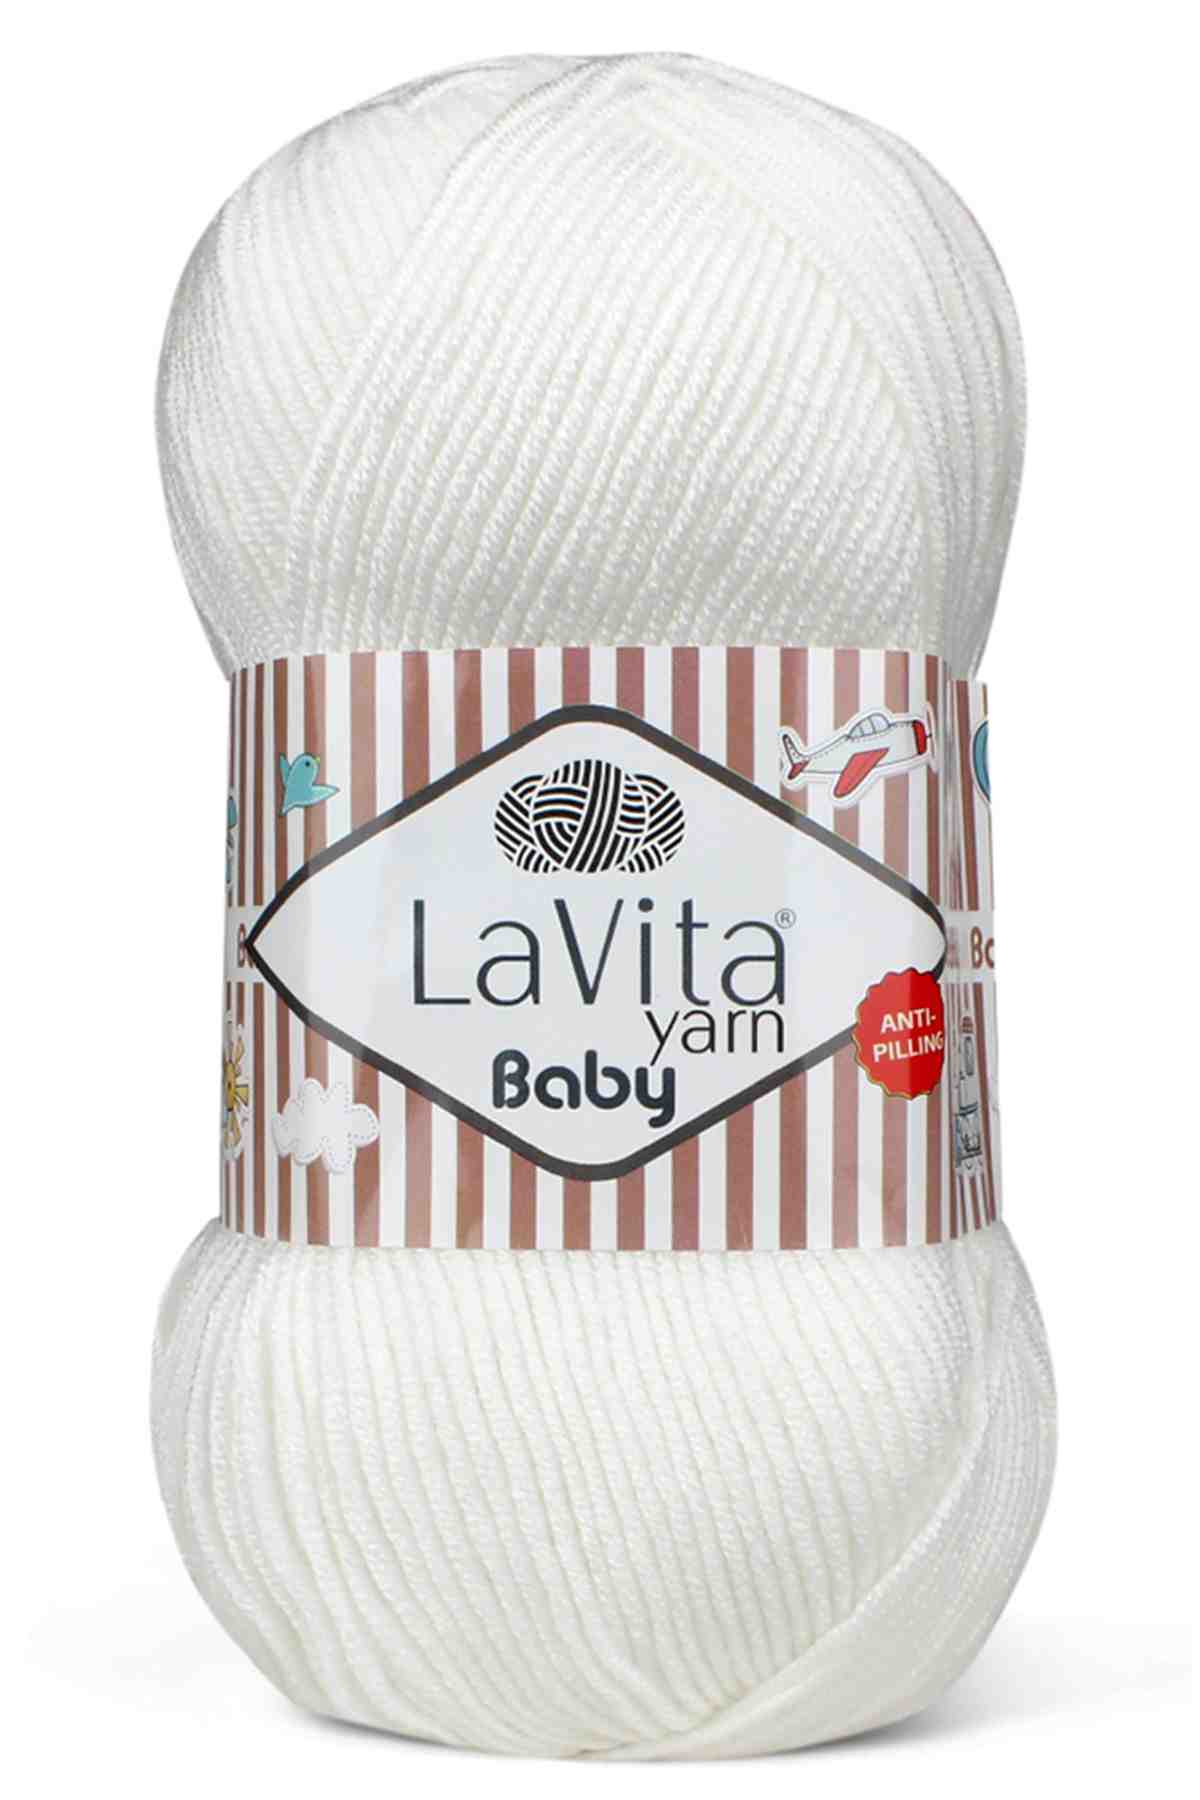 Lavita Baby Anti-Pilling Acrylic Yarn